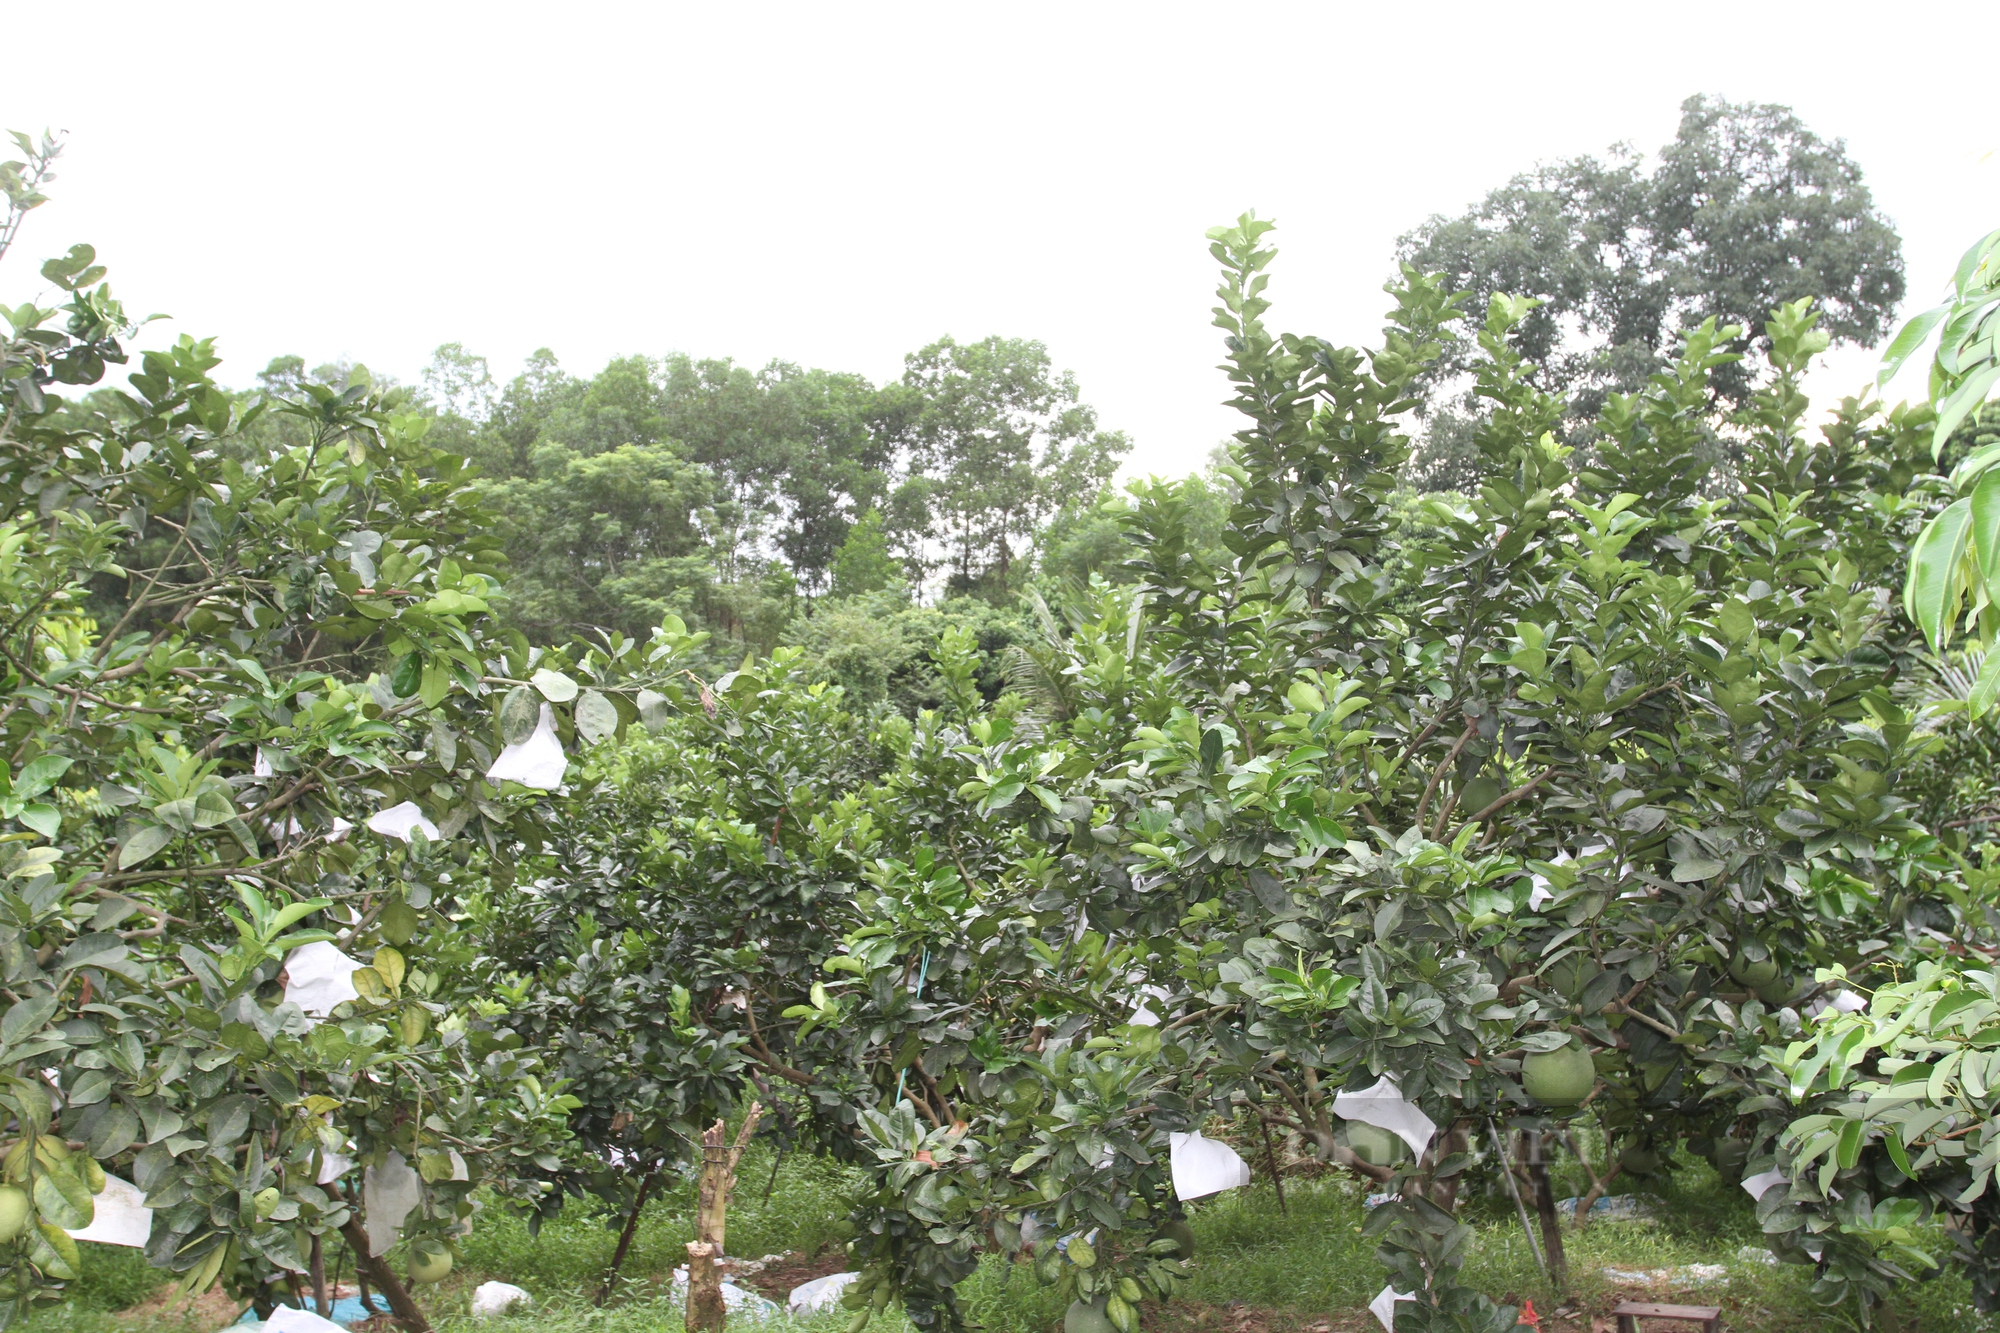 Lão nông đưa giống bưởi lạ về trồng trên đồng đất Thái Nguyên, chỉ sau 1 năm cây nào cây nấy sai trĩu quả  - Ảnh 2.